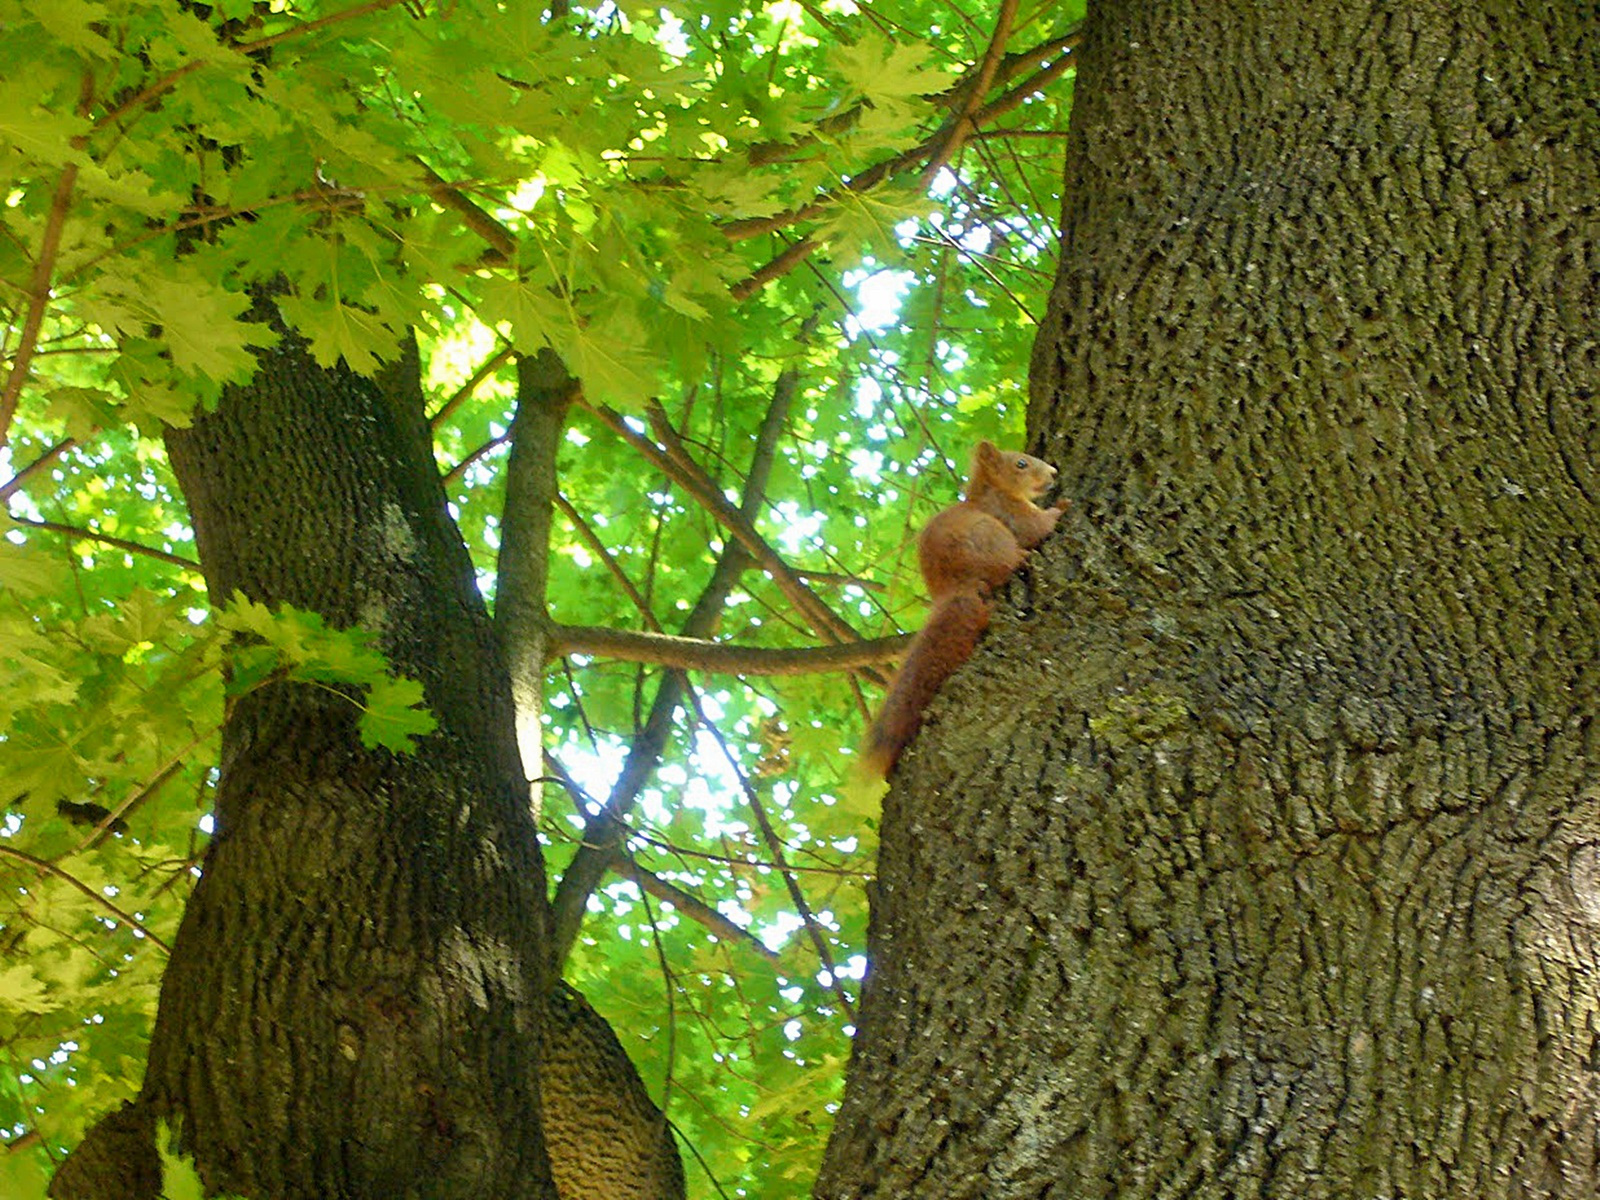 Mint a mókus fenn a fán